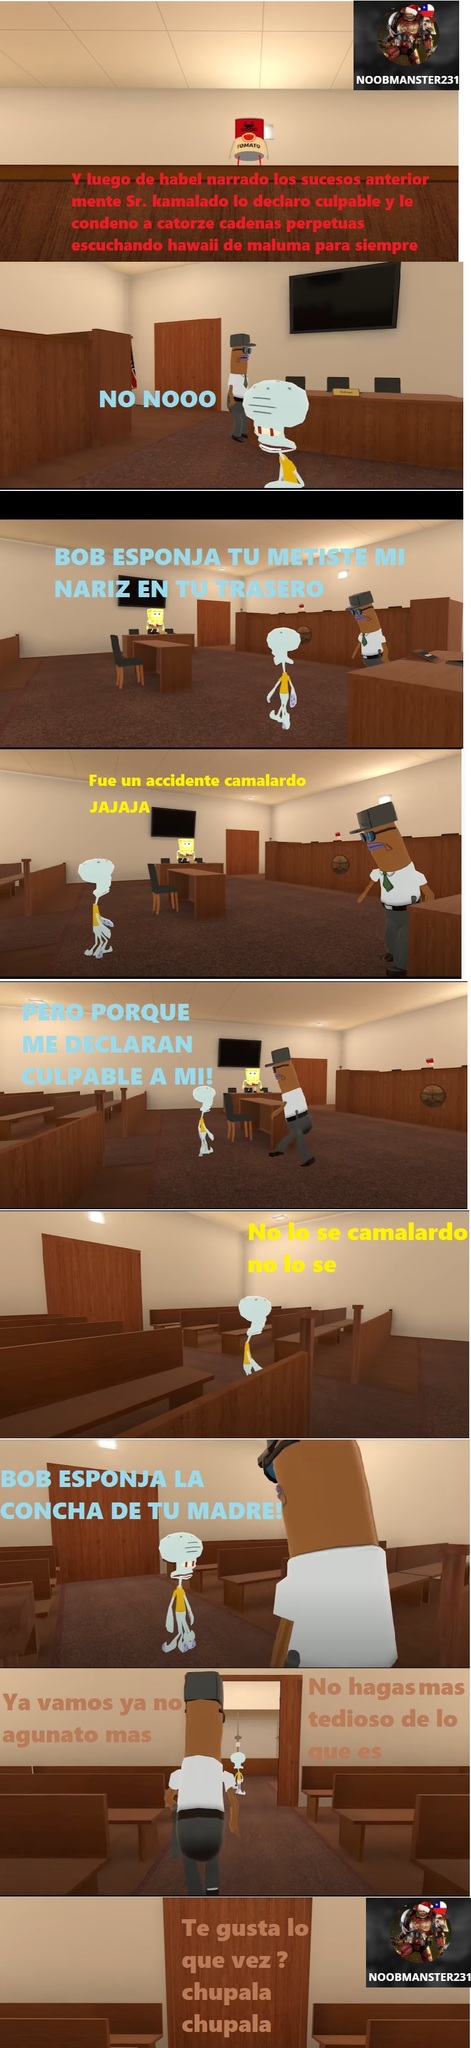 CASO CERRADO - meme